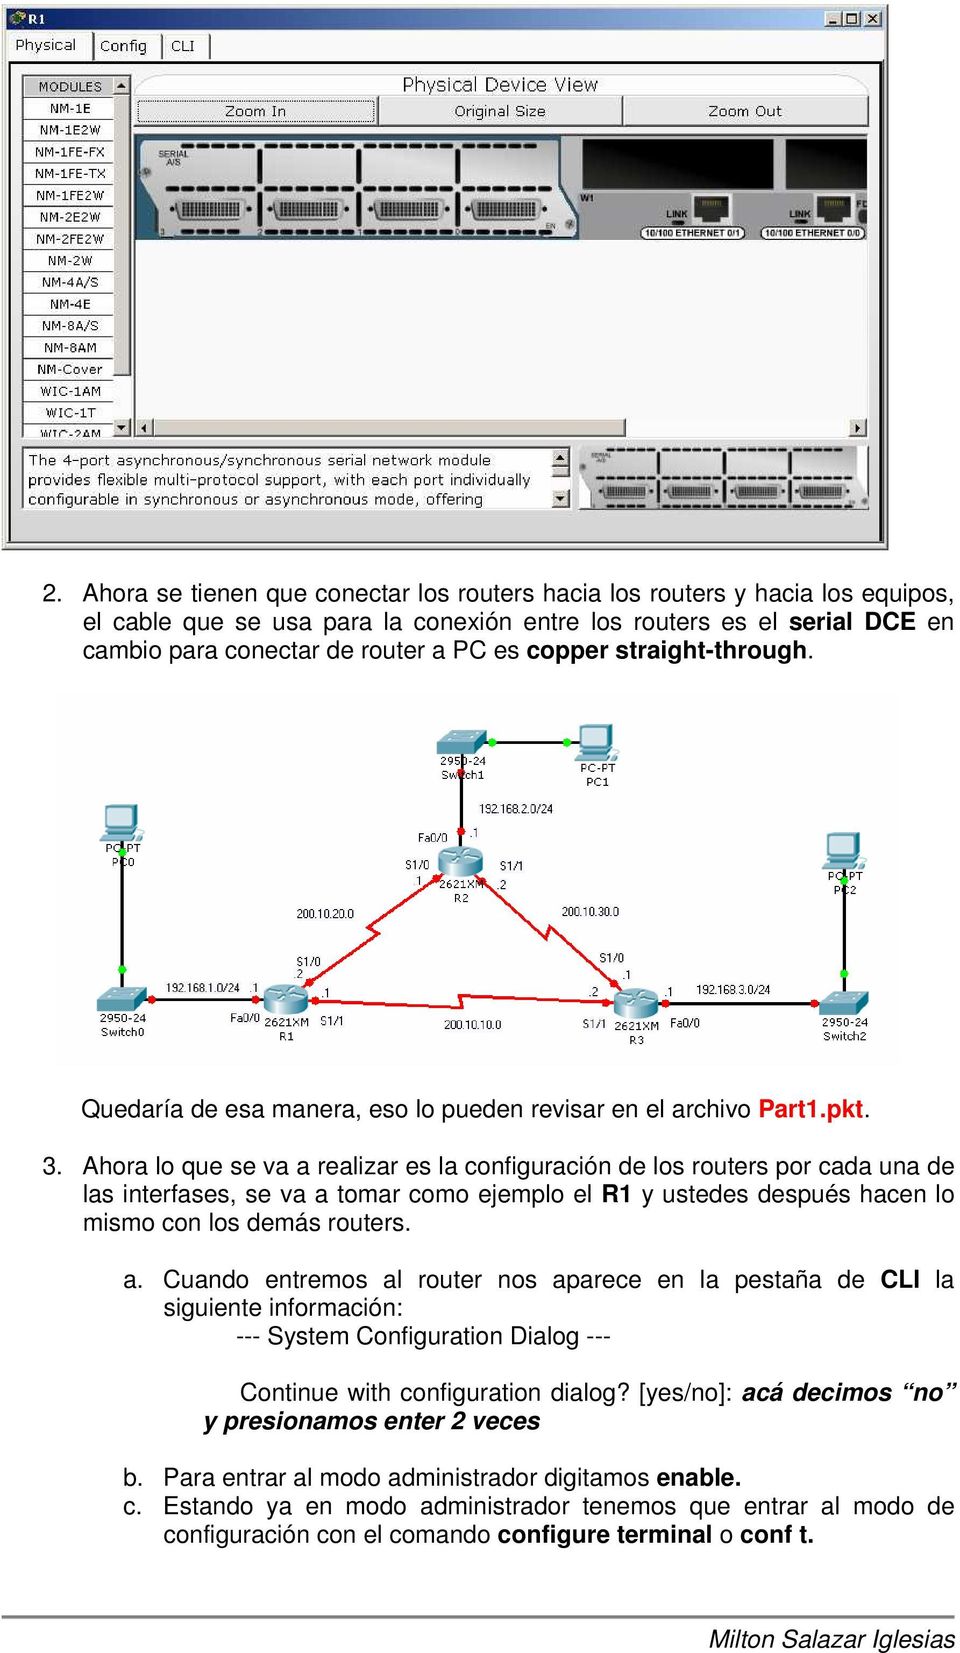 Ahora lo que se va a realizar es la configuración de los routers por cada una de las interfases, se va a tomar como ejemplo el R1 y ustedes después hacen lo mismo con los demás routers. a. Cuando entremos al router nos aparece en la pestaña de CLI la siguiente información: --- System Configuration Dialog --- Continue with configuration dialog?